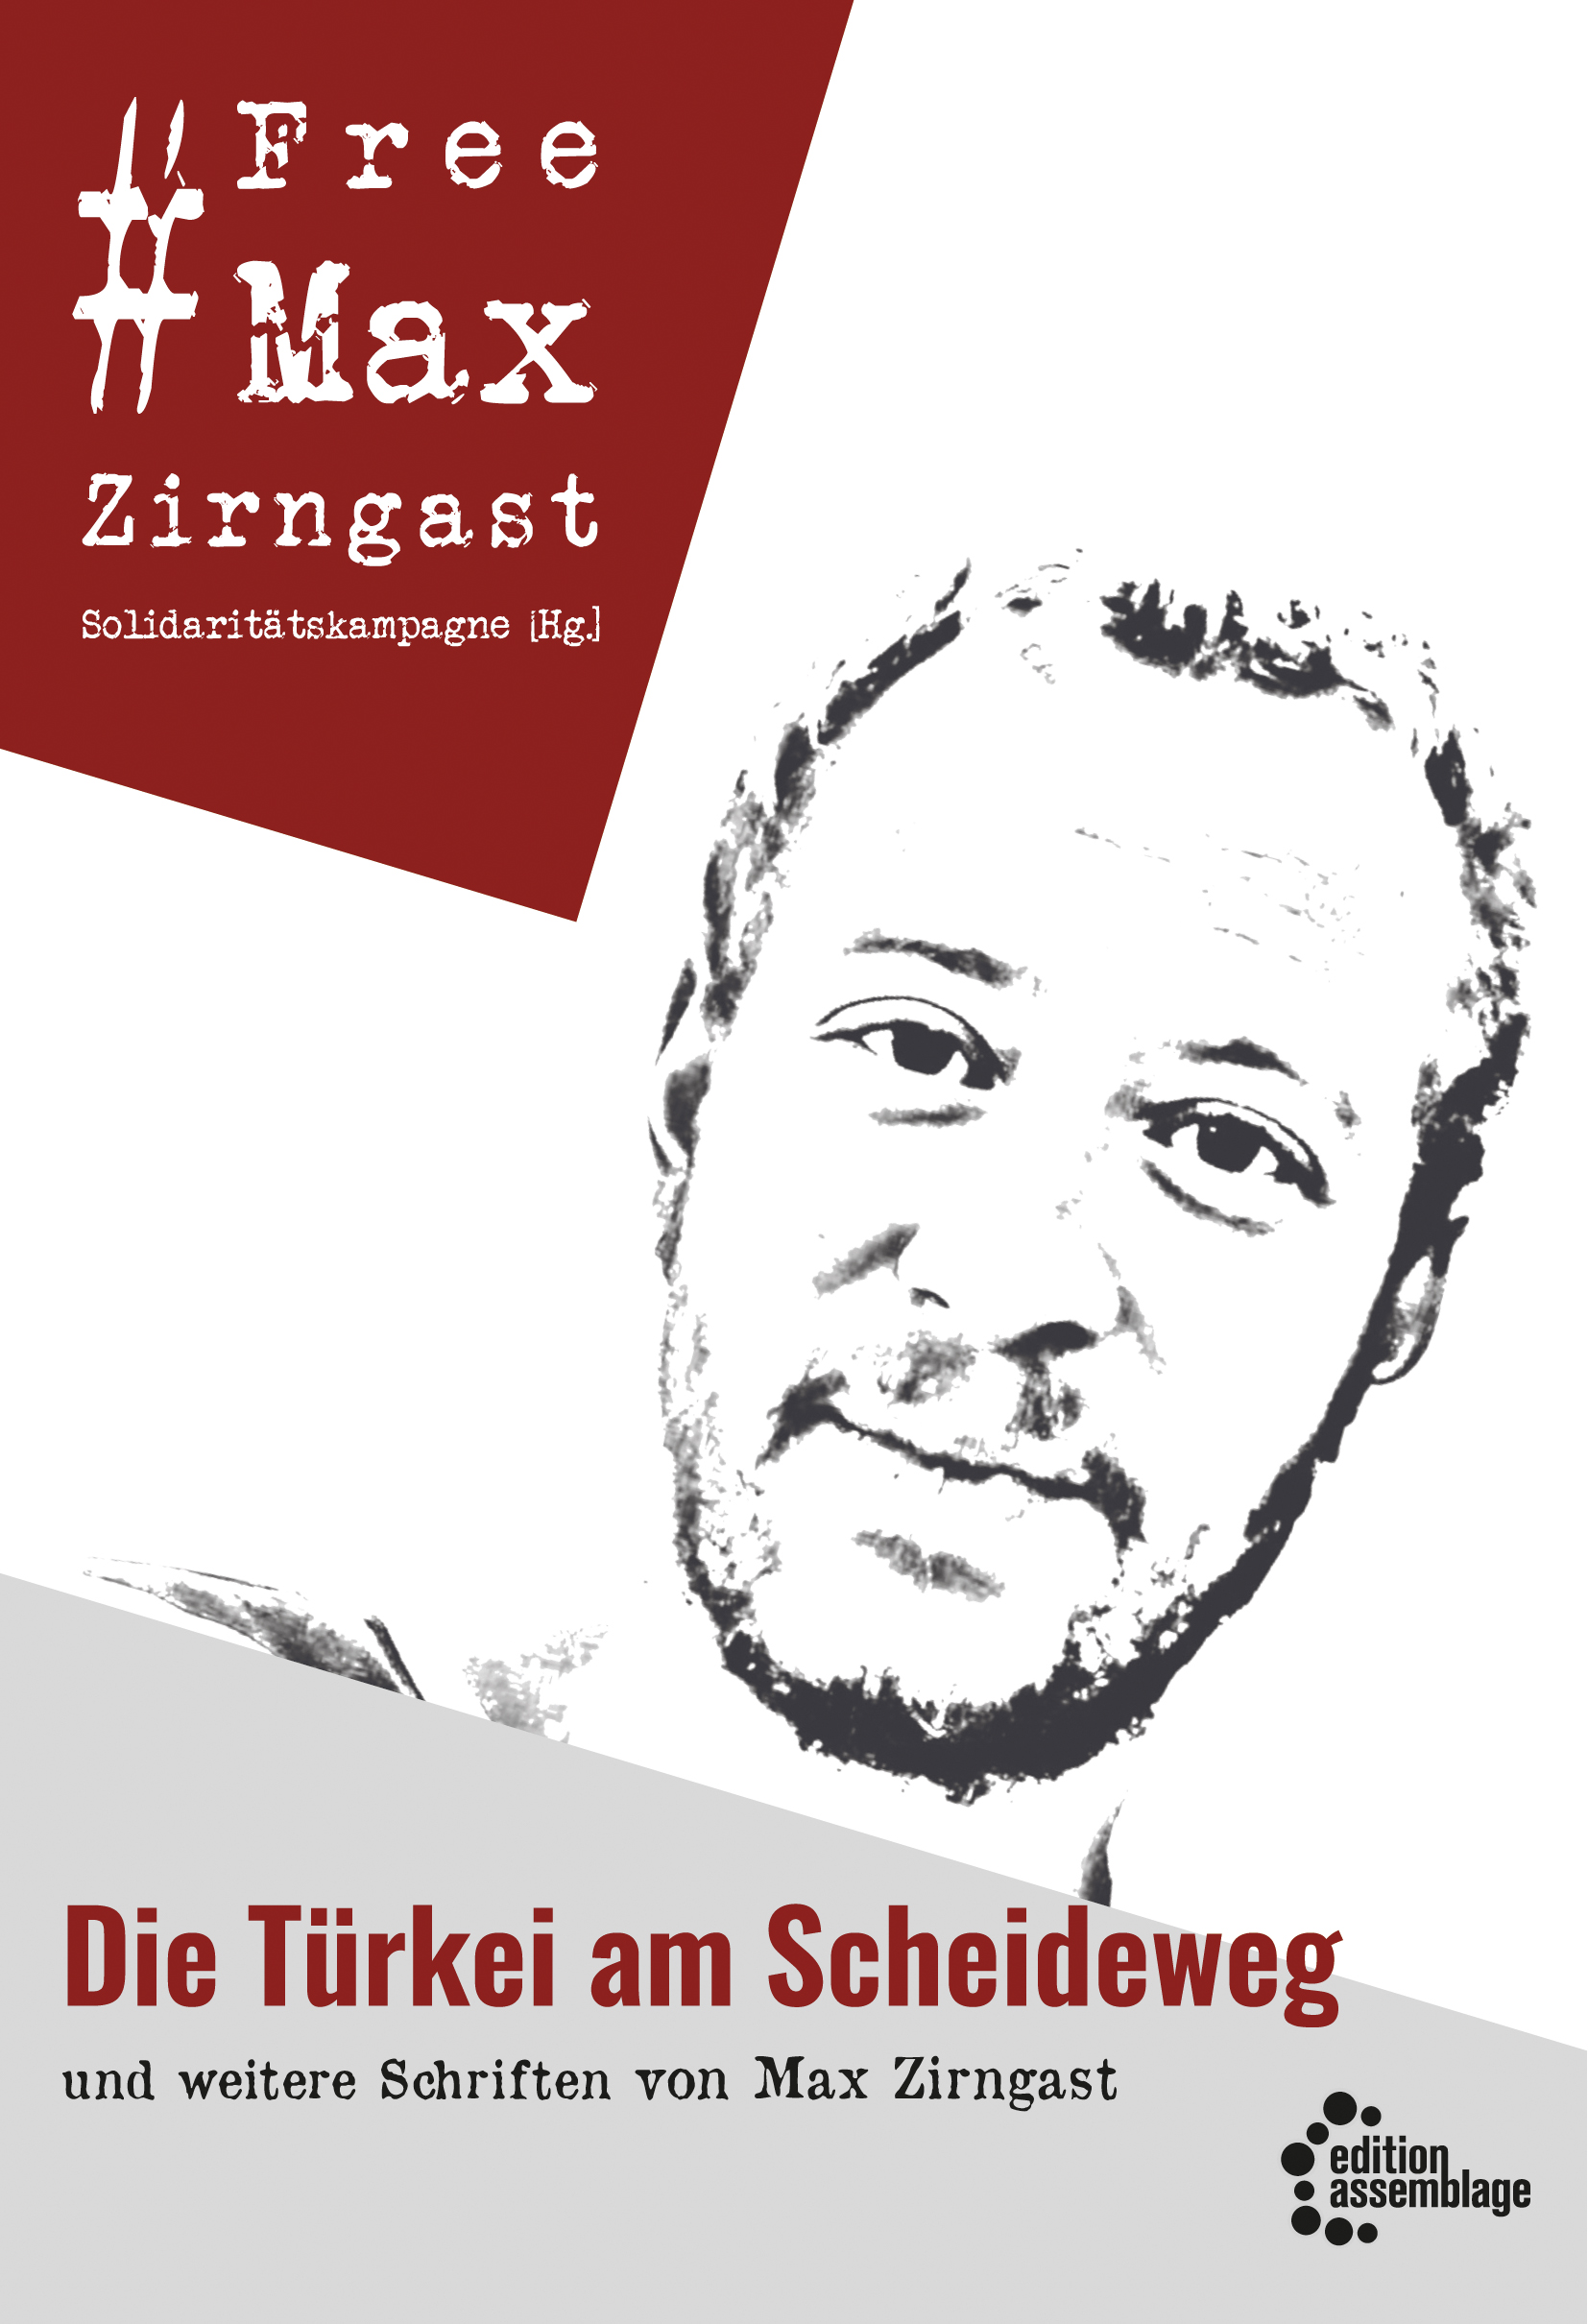 Max Zirngast: Buchvorstellung und Diskussion